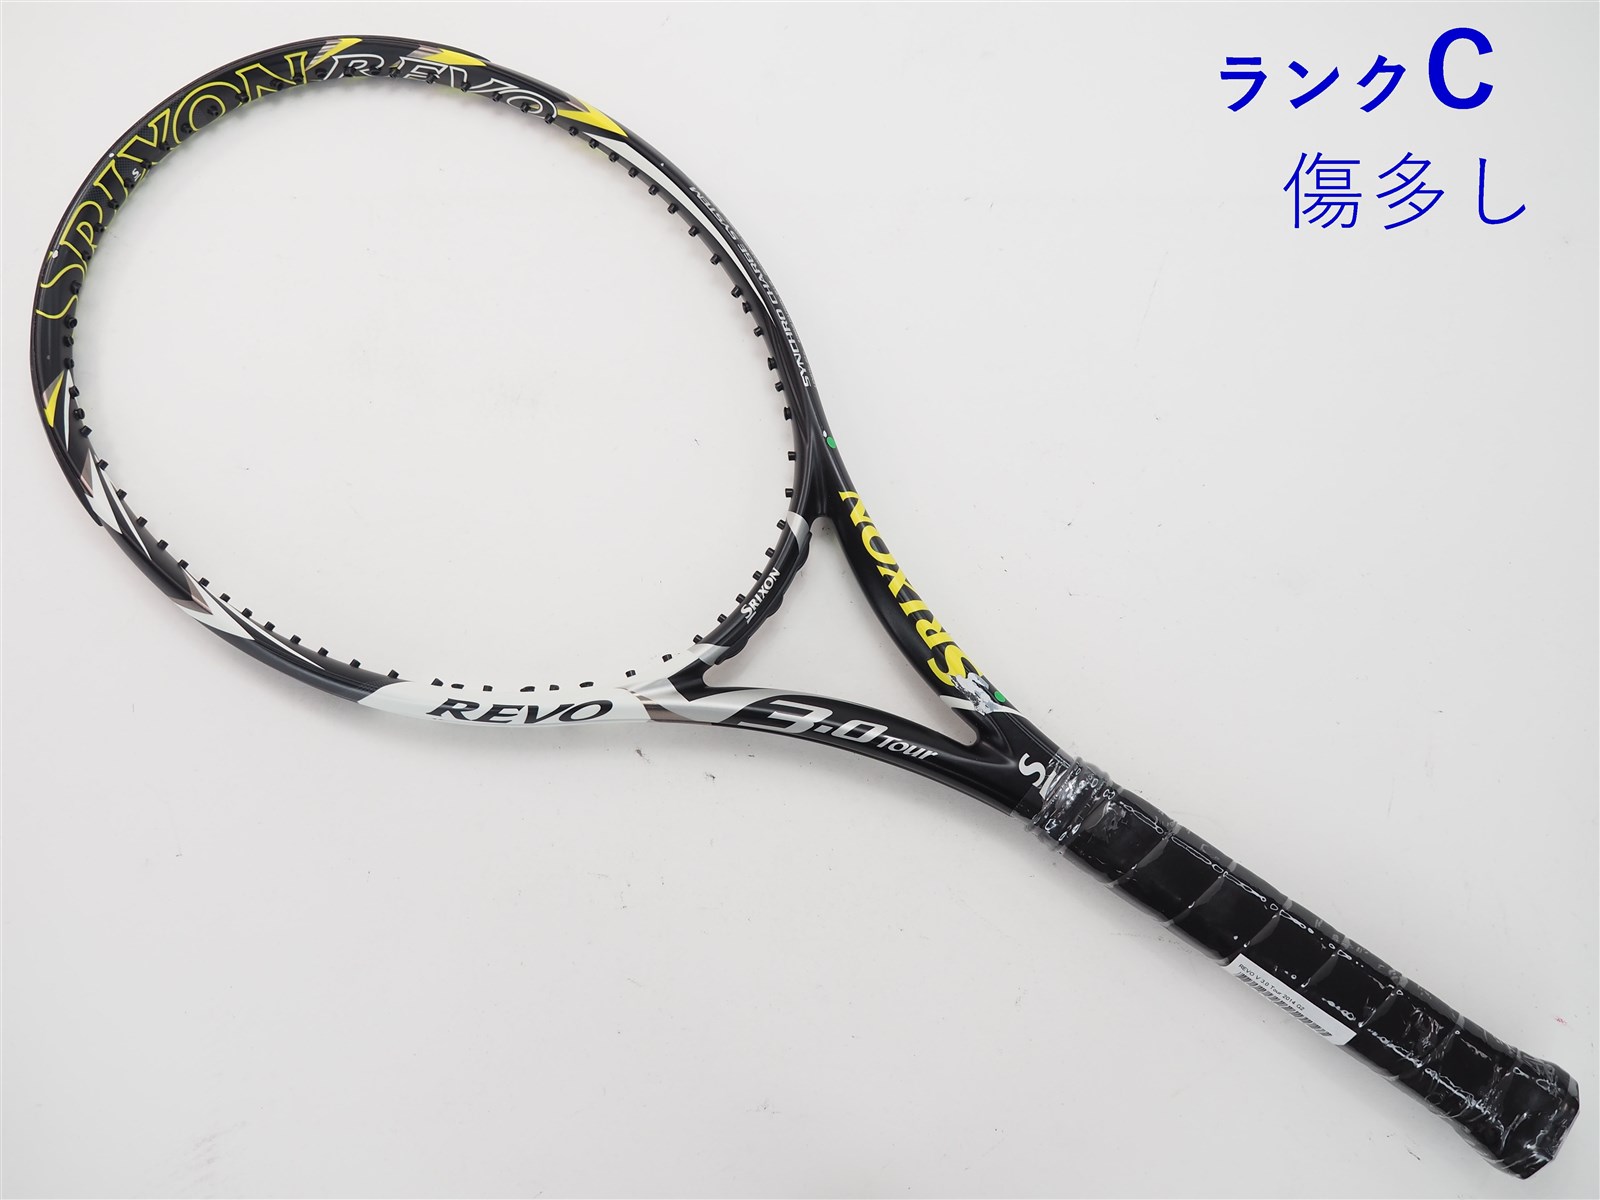 スリクソン レヴォ ブイ 3.0 ツアー 2014年モデル 中古テニスラケット メンテナンス済